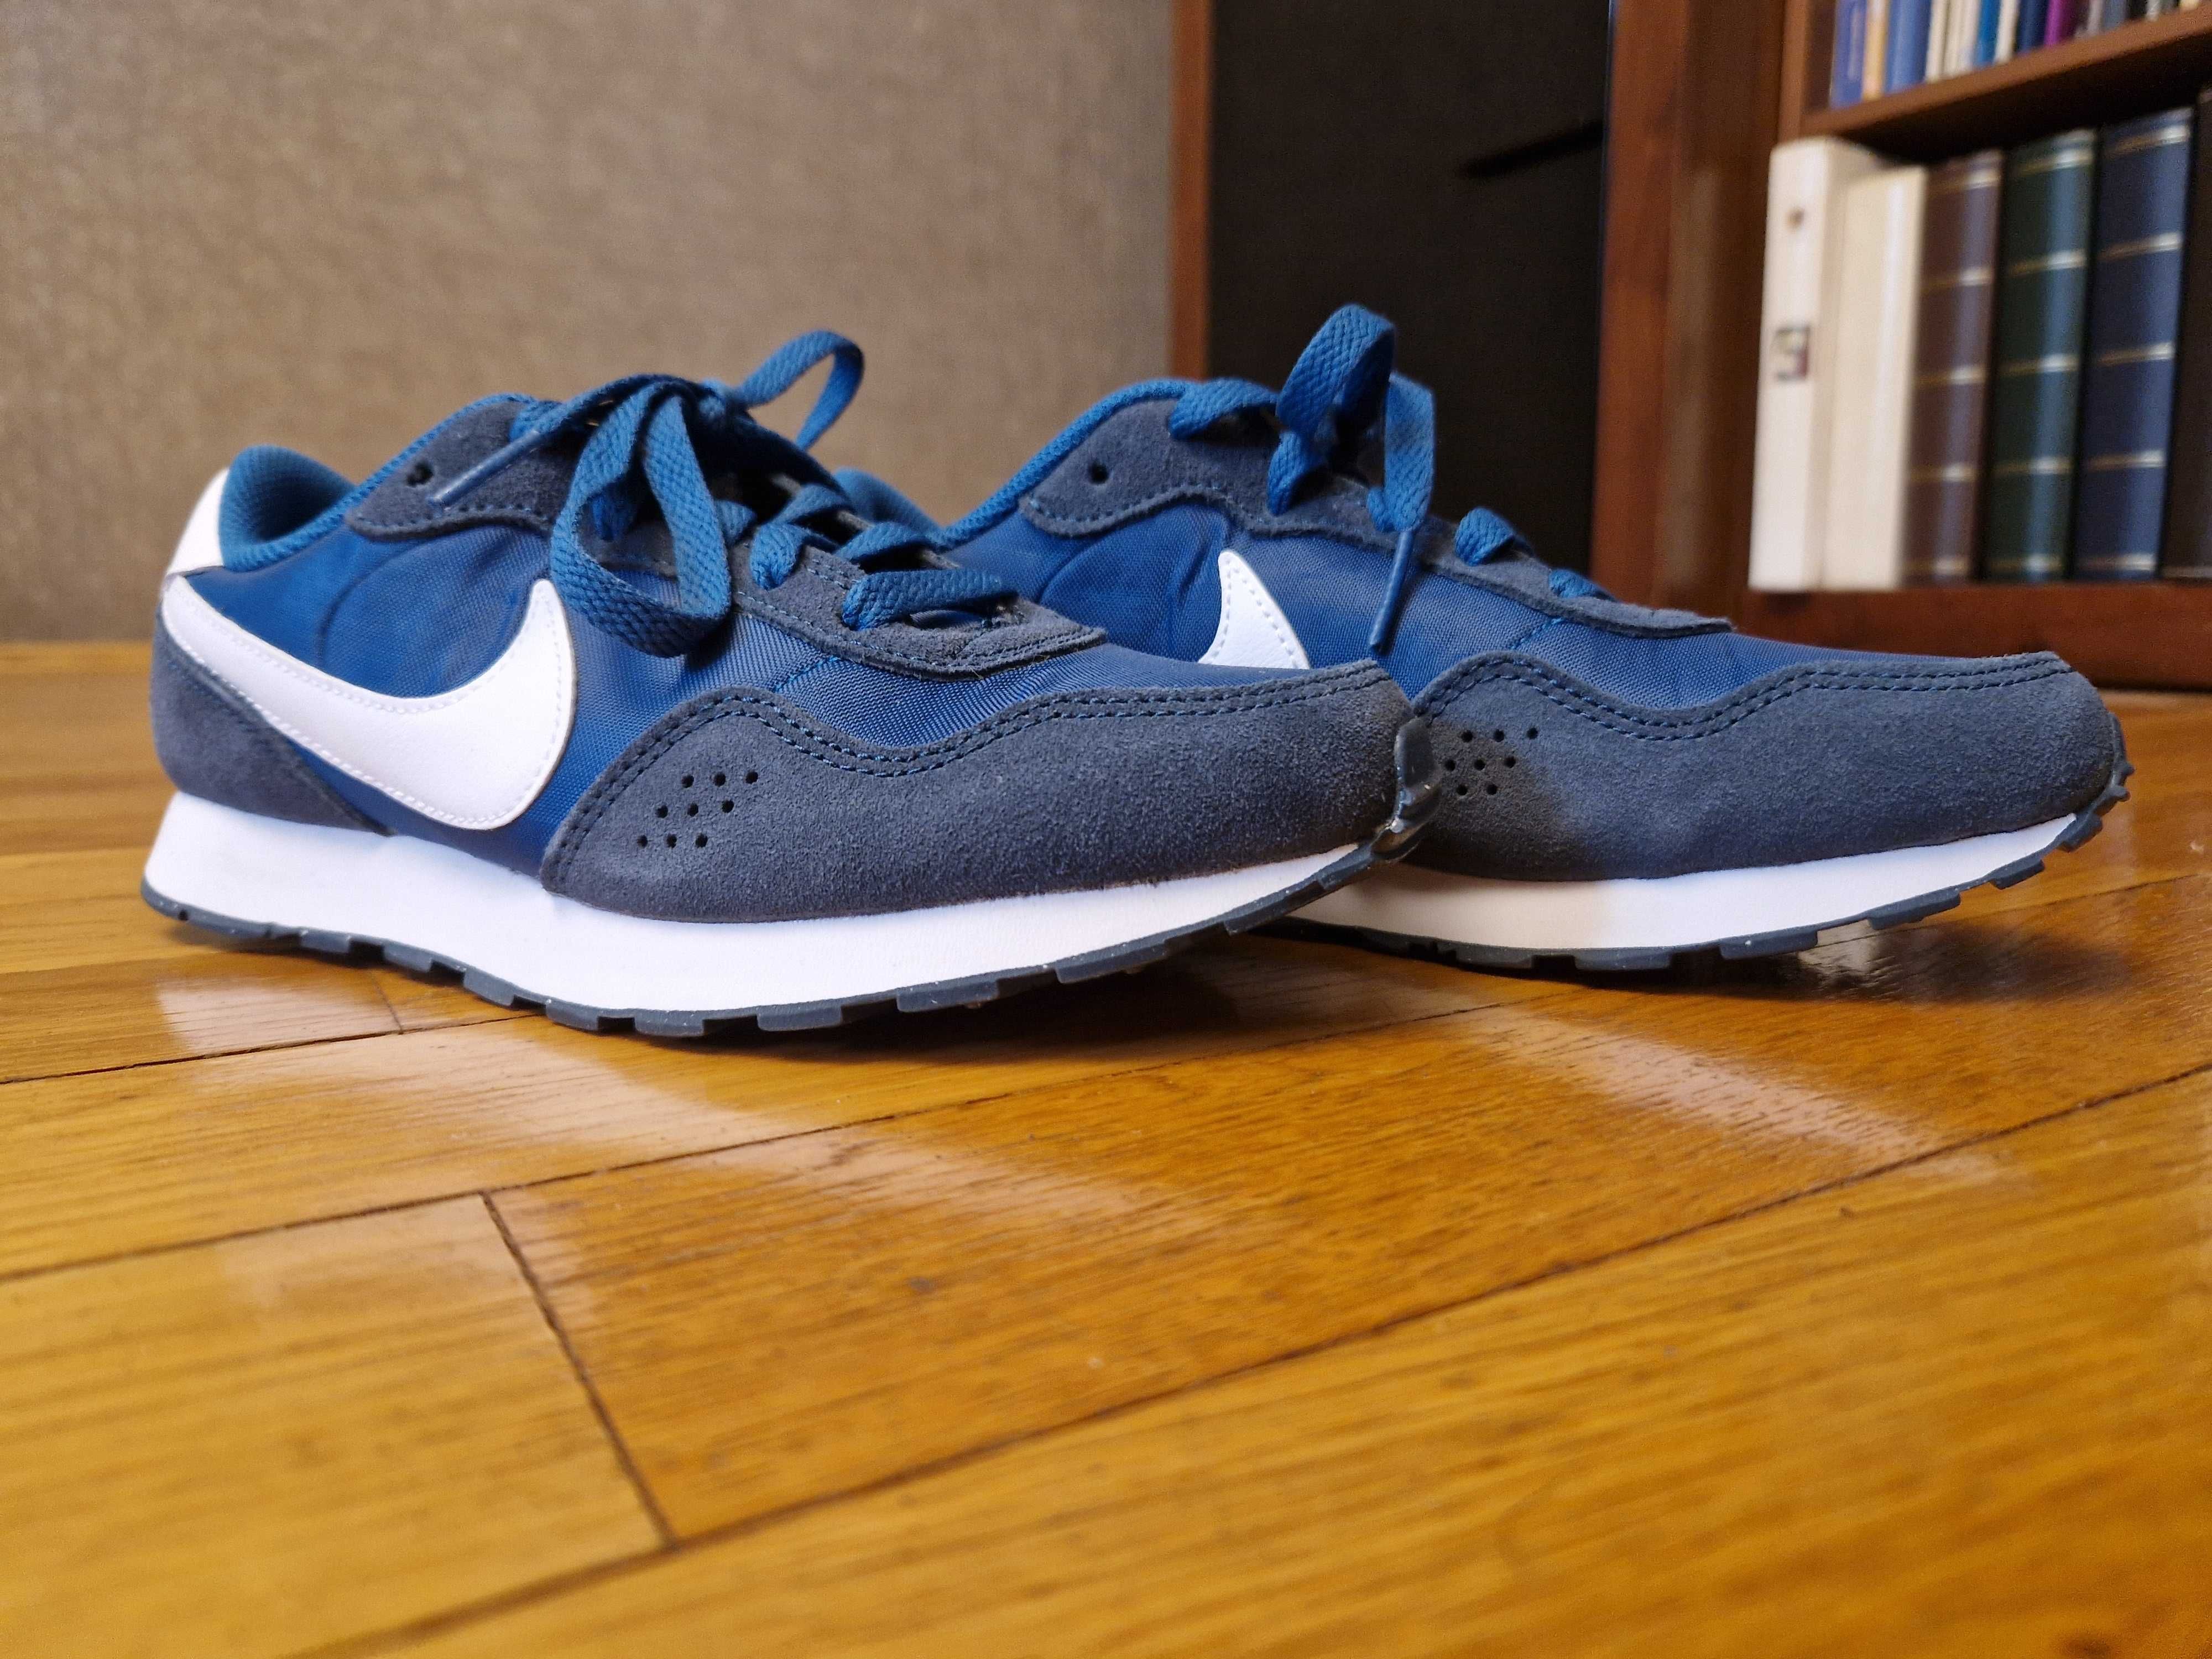 Pantofi sport Nike pt. băieți 36, noi-nouți